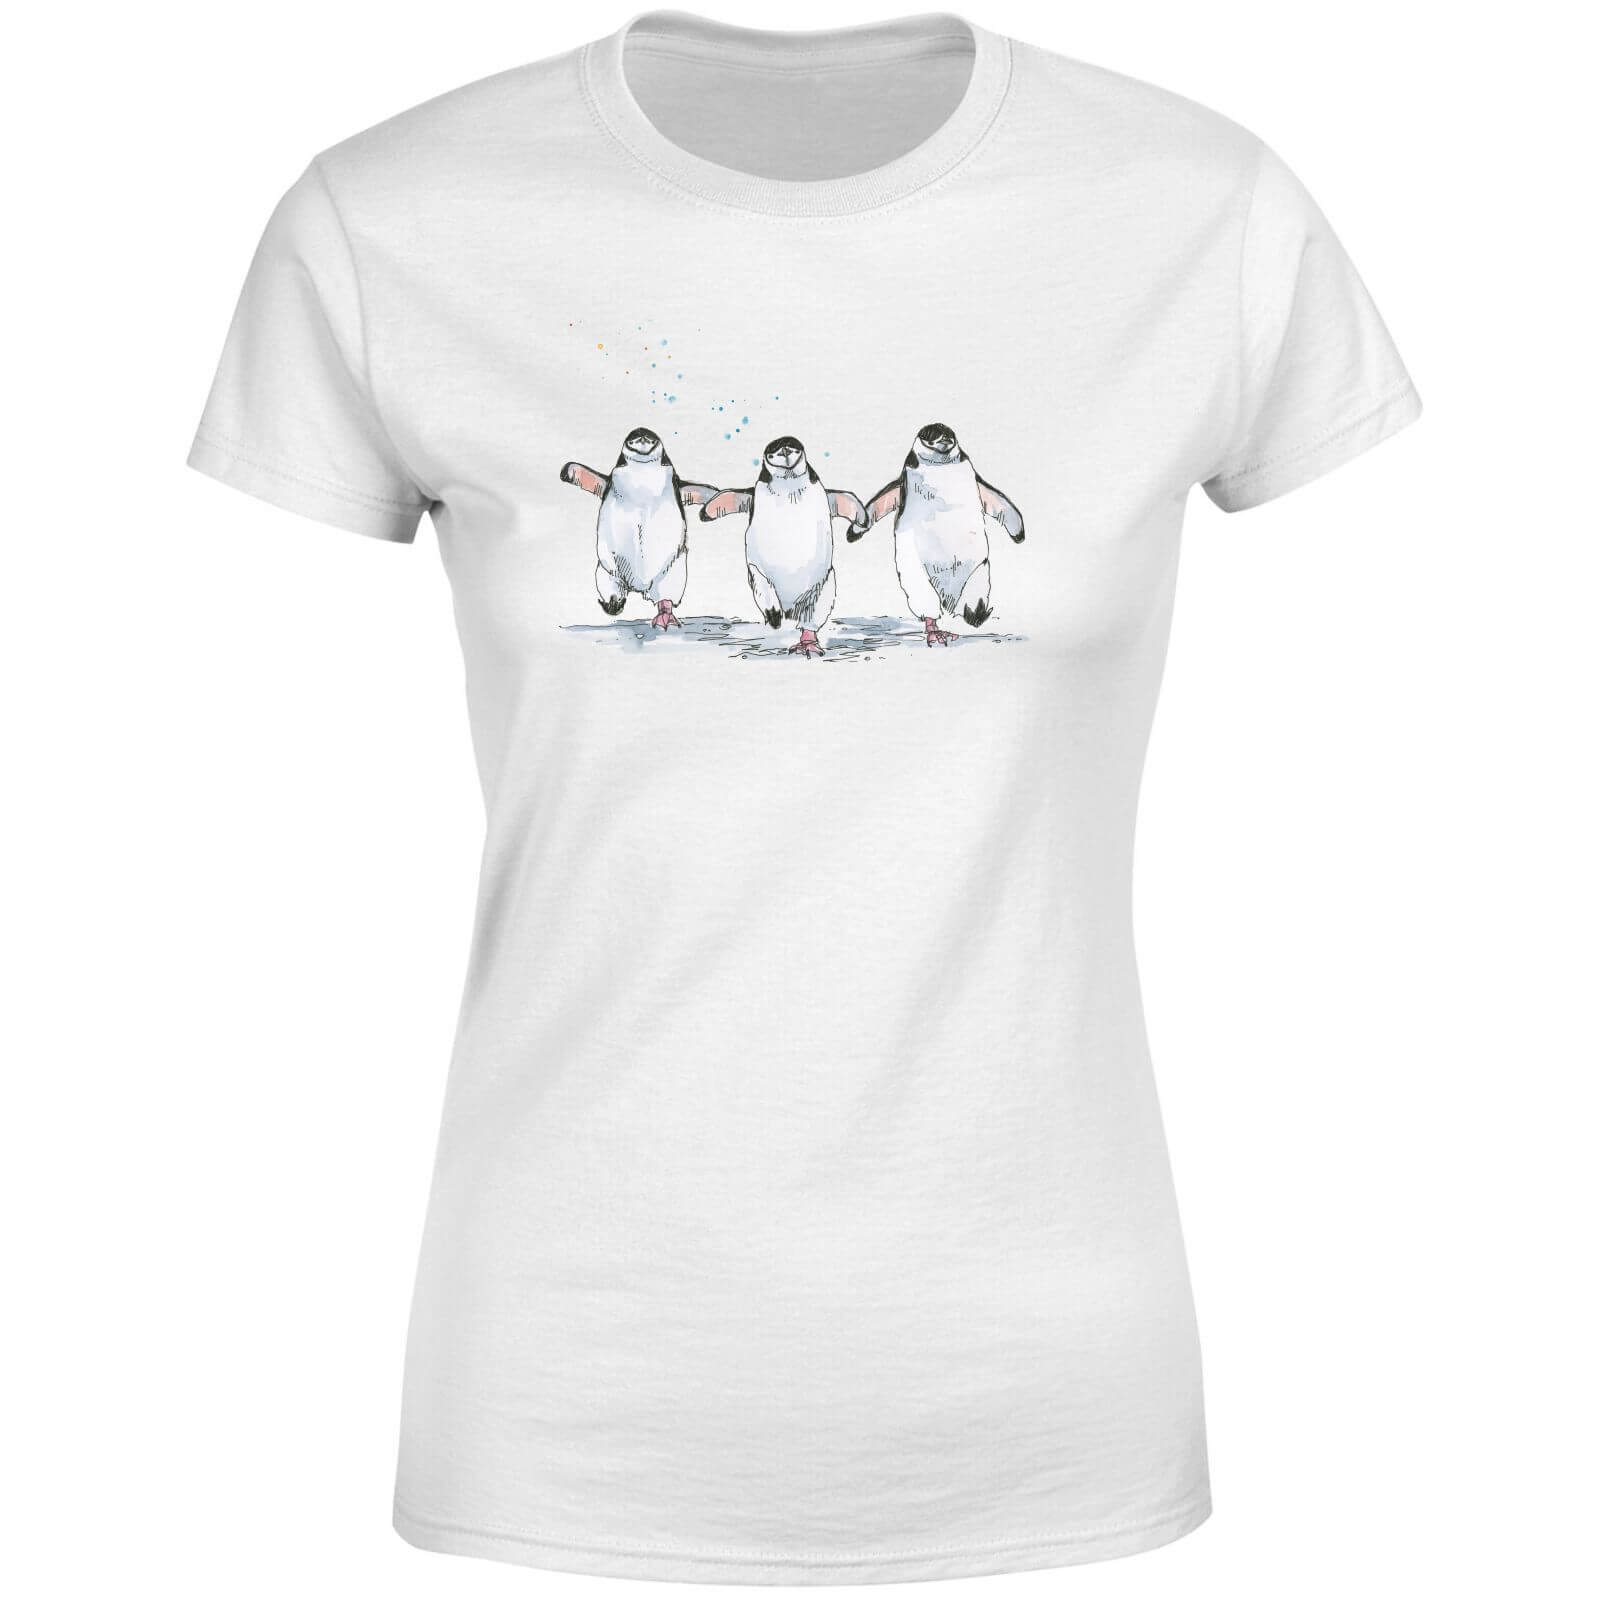 Snowtap Penguins Women's T-Shirt - White - S - White